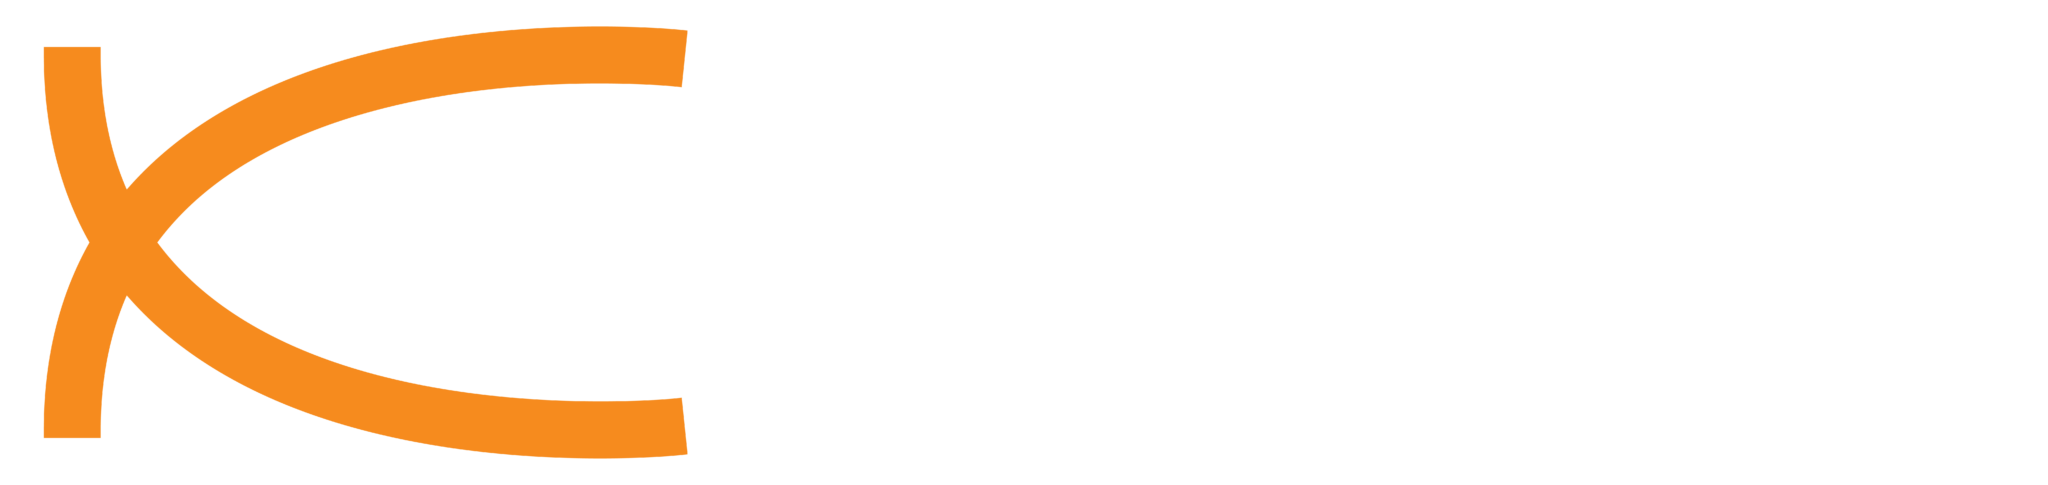 logo_Right_Shift_text_white